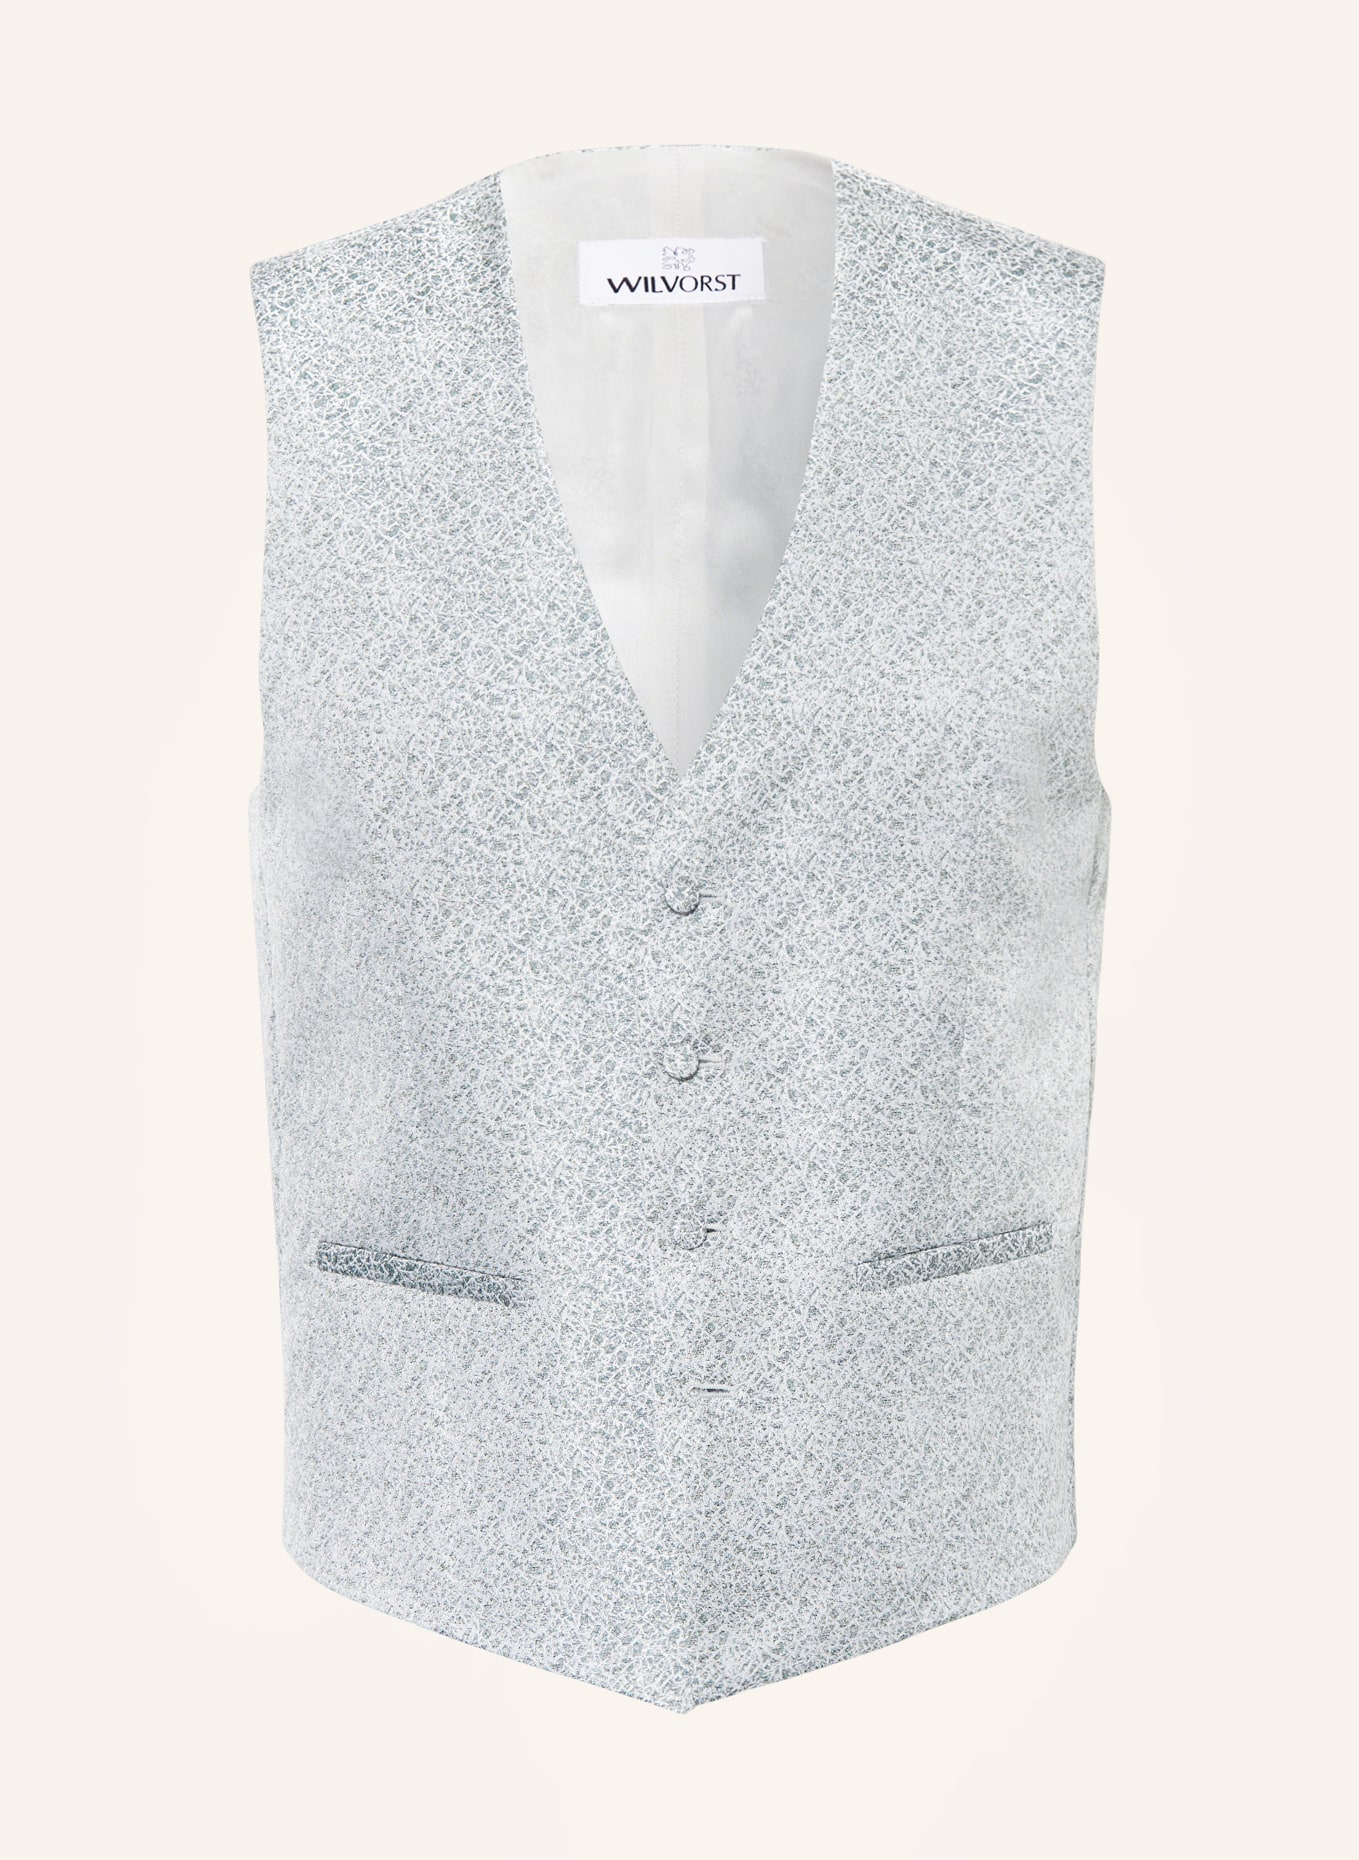 WILVORST Vest extra slim fit, Color: 040 Grün gemustert (Image 1)